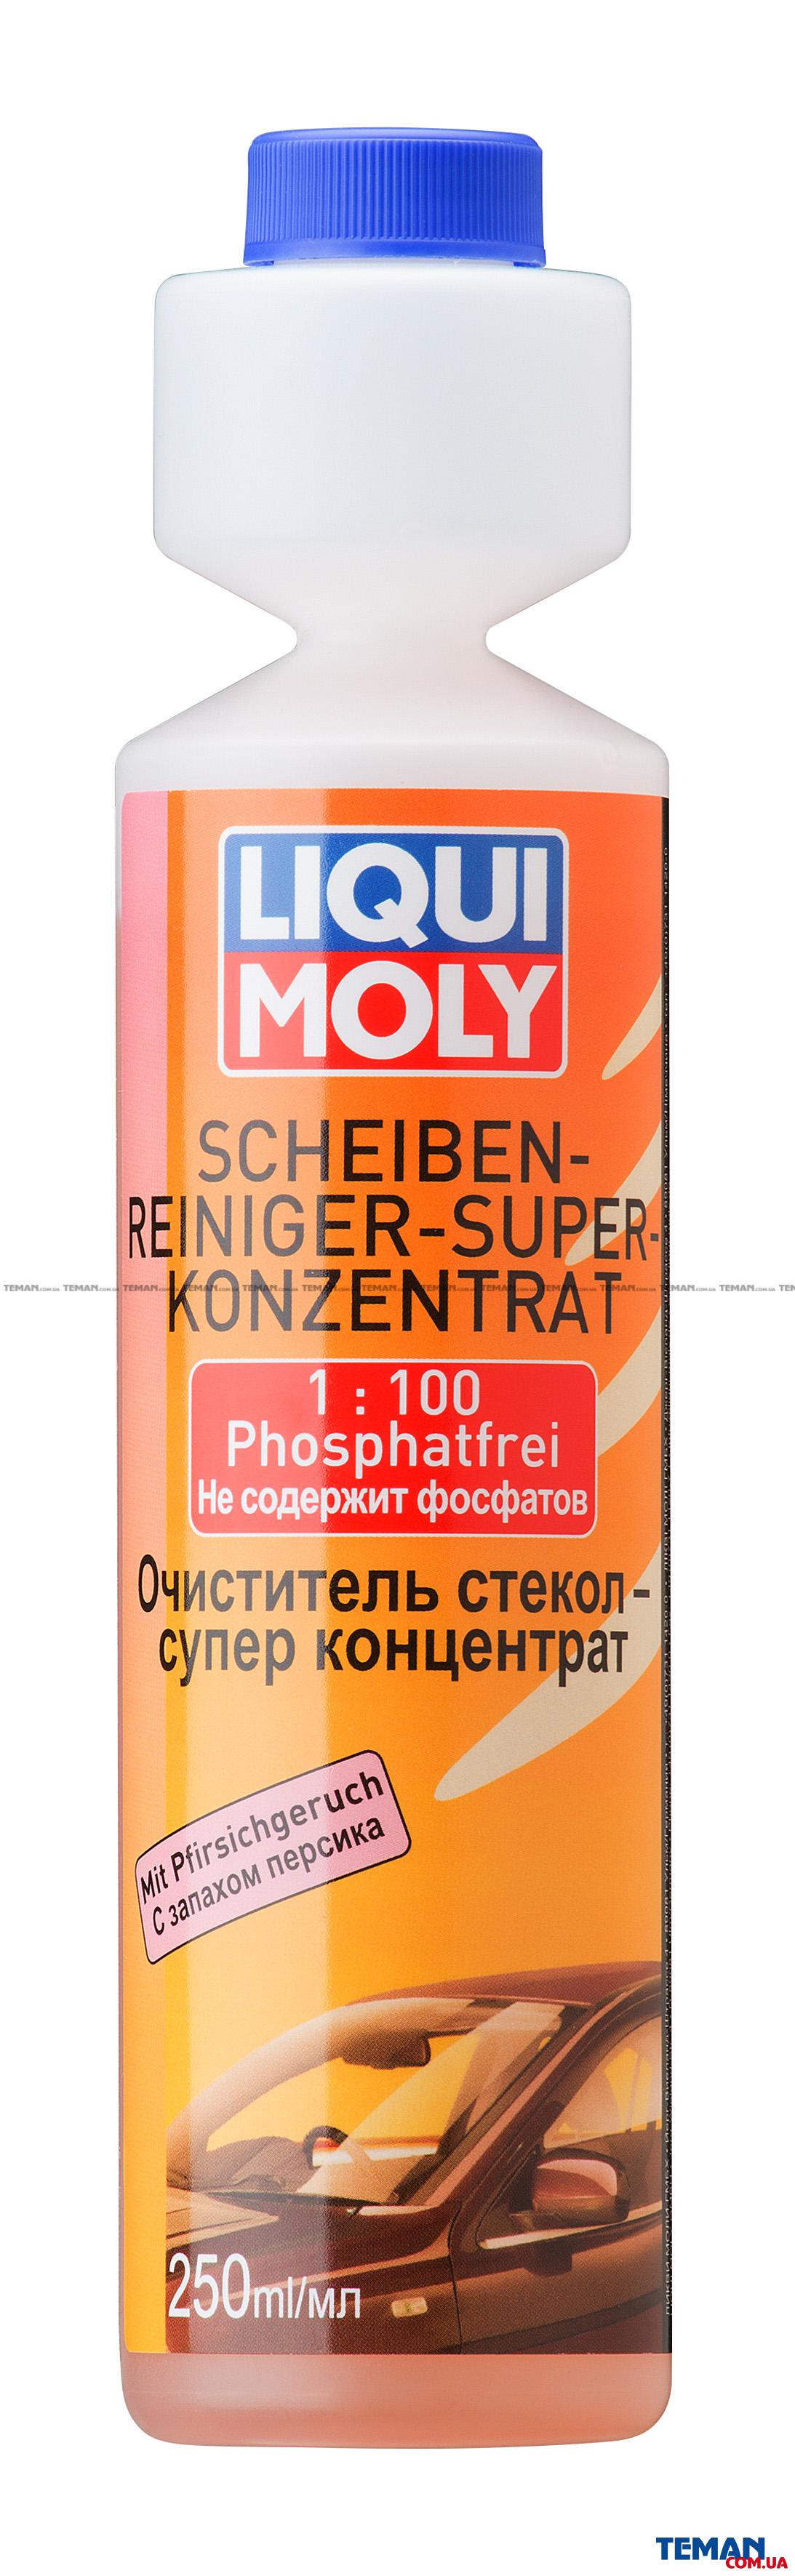  Купить Очиститель стекол суперконц.(персик) Scheiben-Reiniger Super Konzentrat PfirsichLIQUI MOLY 2379   